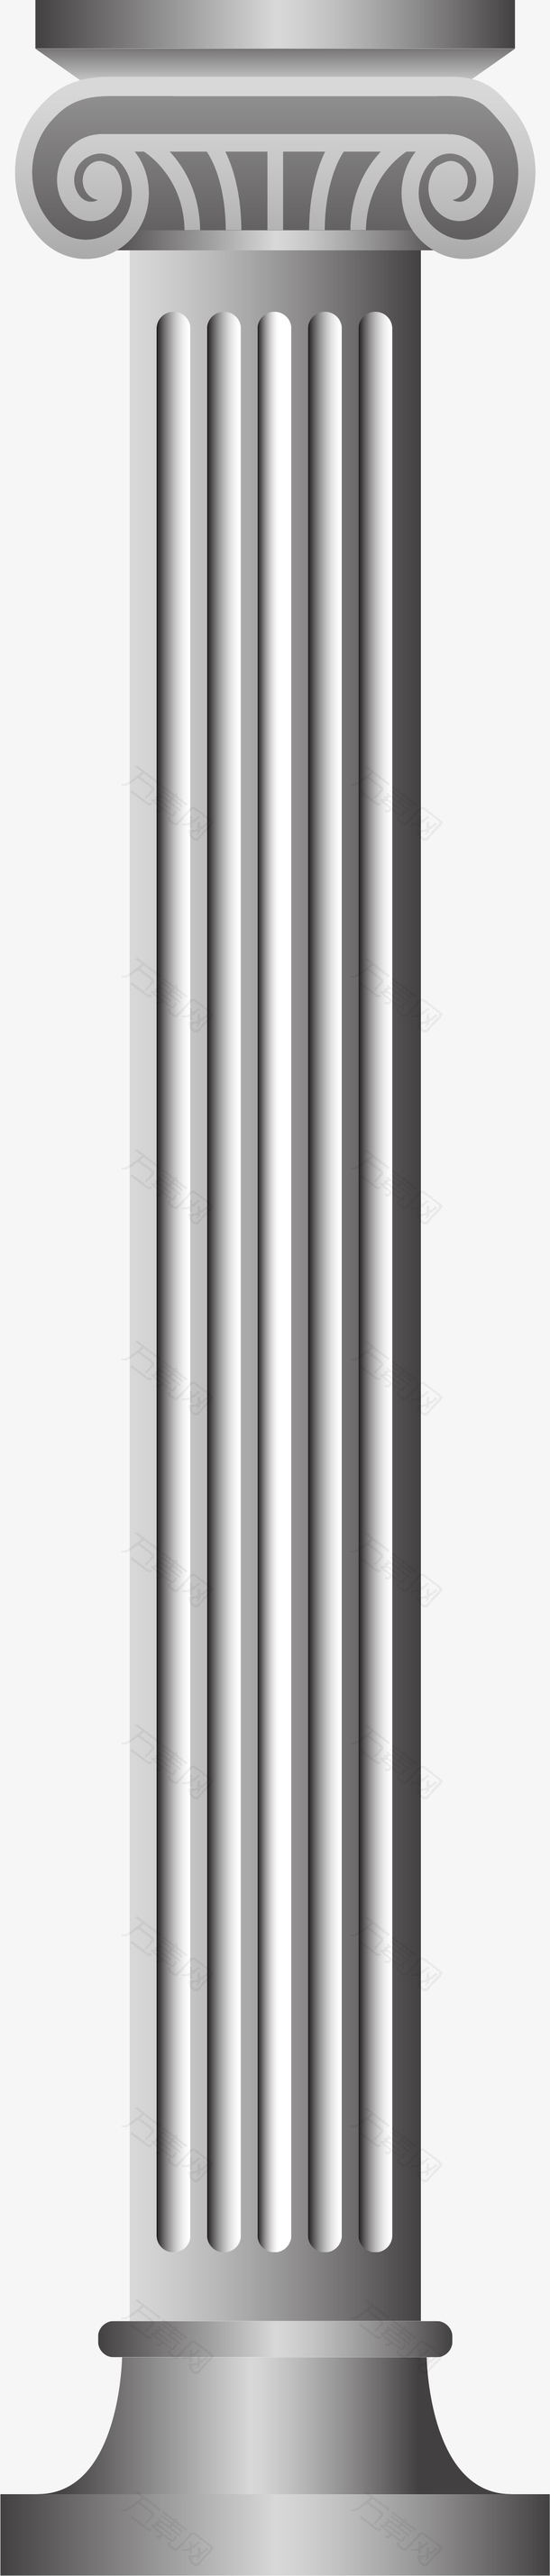 金属材质墙柱